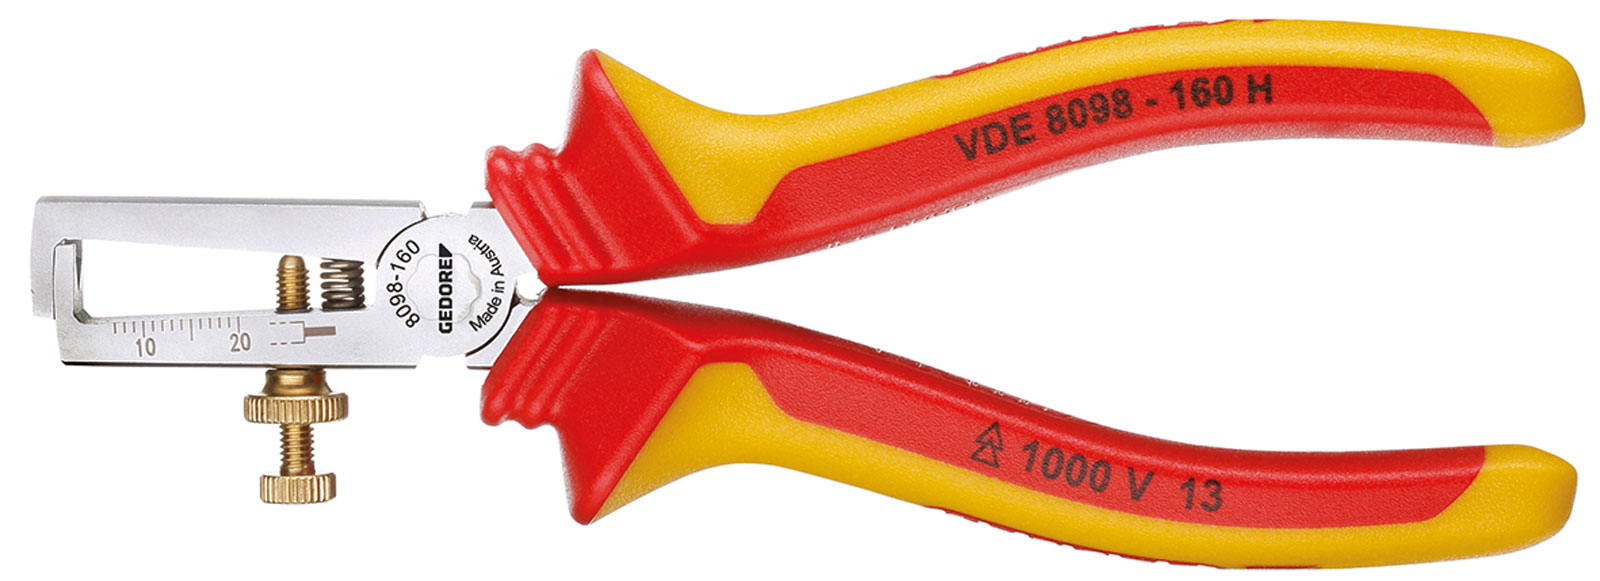 Bild für Kategorie VDE 8098 H VDE-Abisolierzange mit Hüllenisolierung